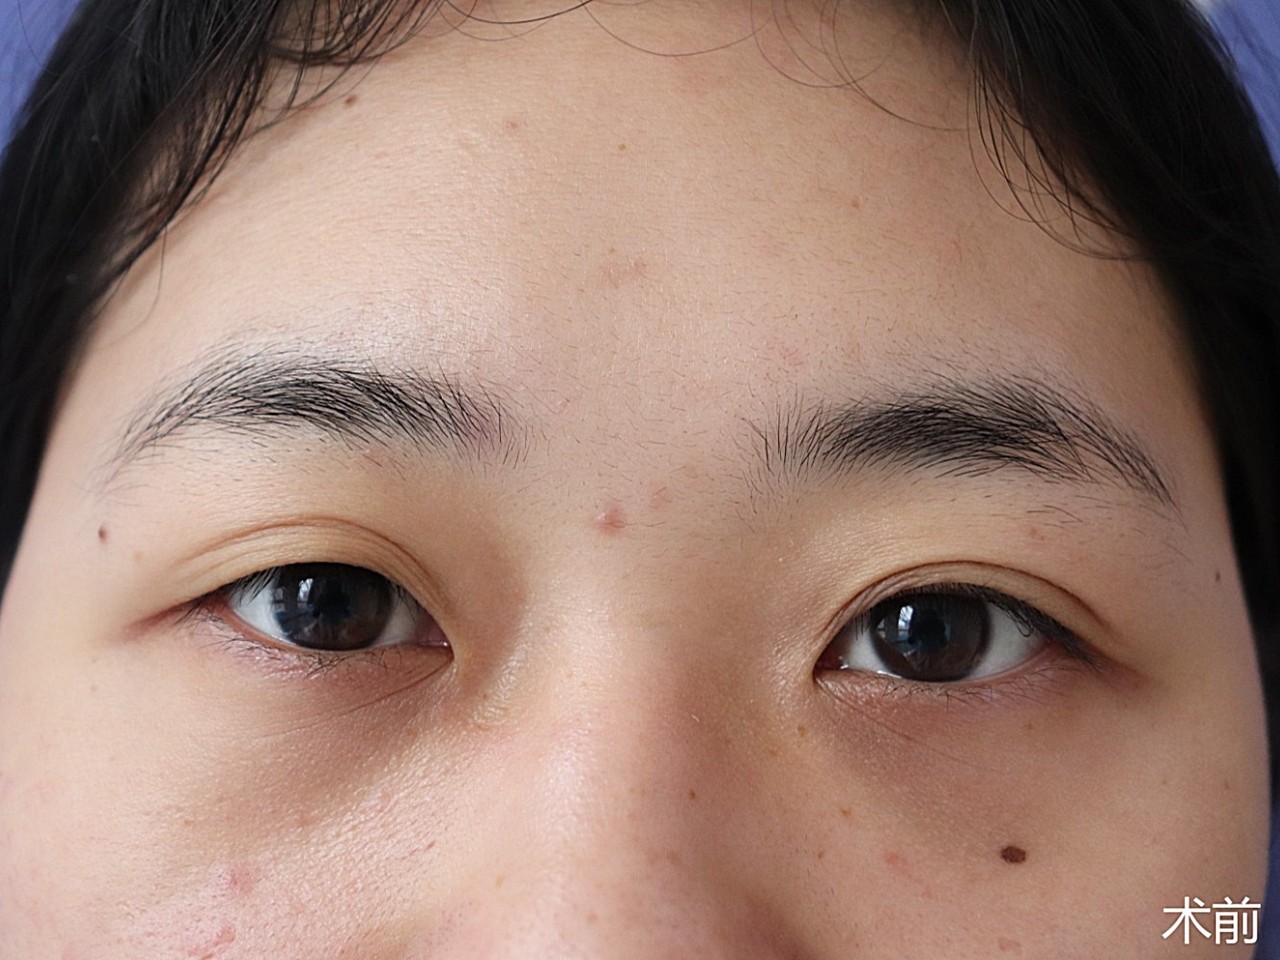 术前诊断术前双眼不对称,上眼睑肌无力的原因导致上睑